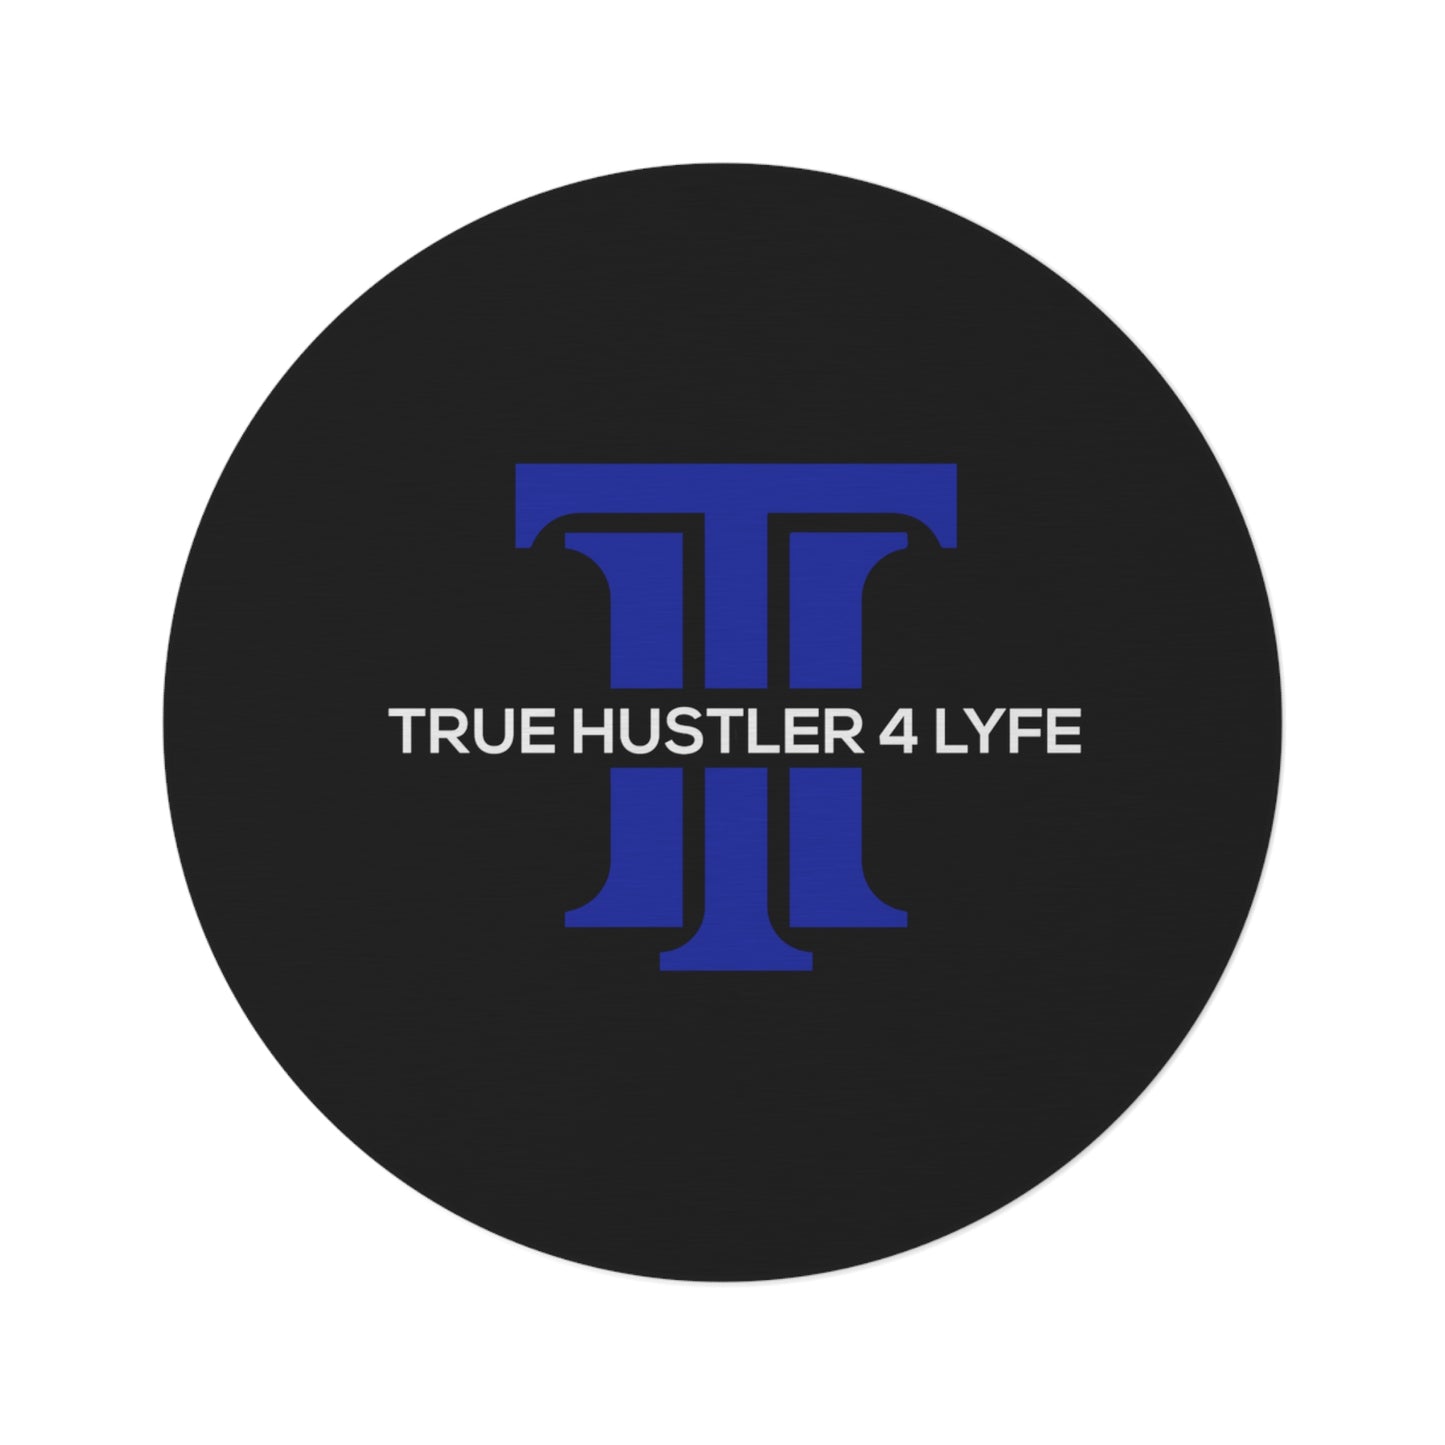 True Hustler 4 Lyfe Circular Statement Rug, Round